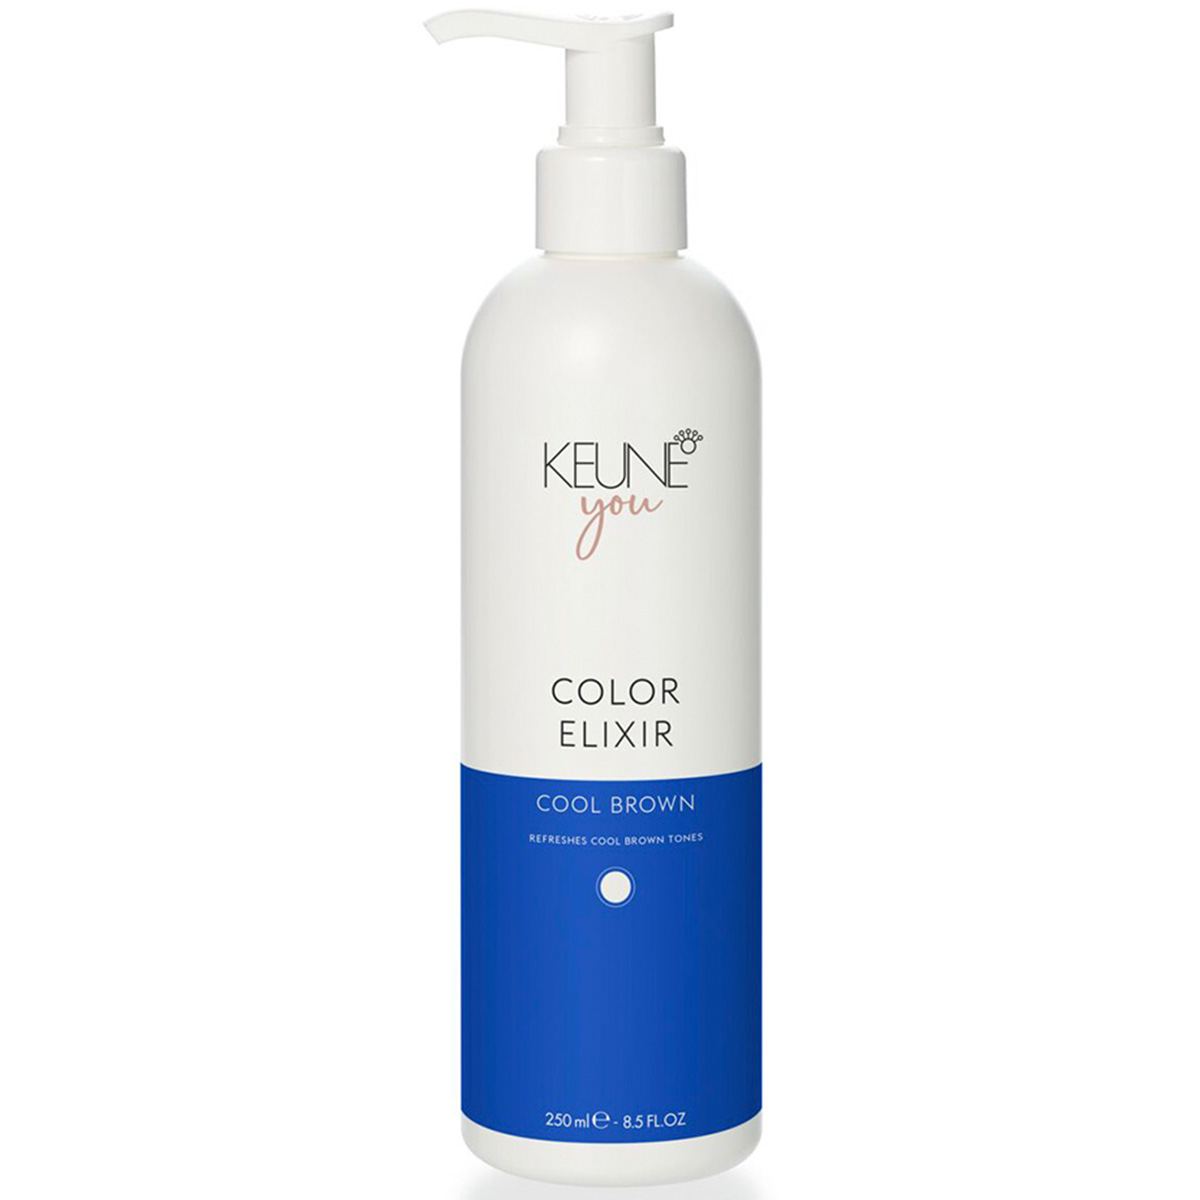 Keune Эликсир для окрашенных и натуральных волос Холодный коричневый Color Elixir Cool Brown, 250 мл (Keune, You) цена и фото